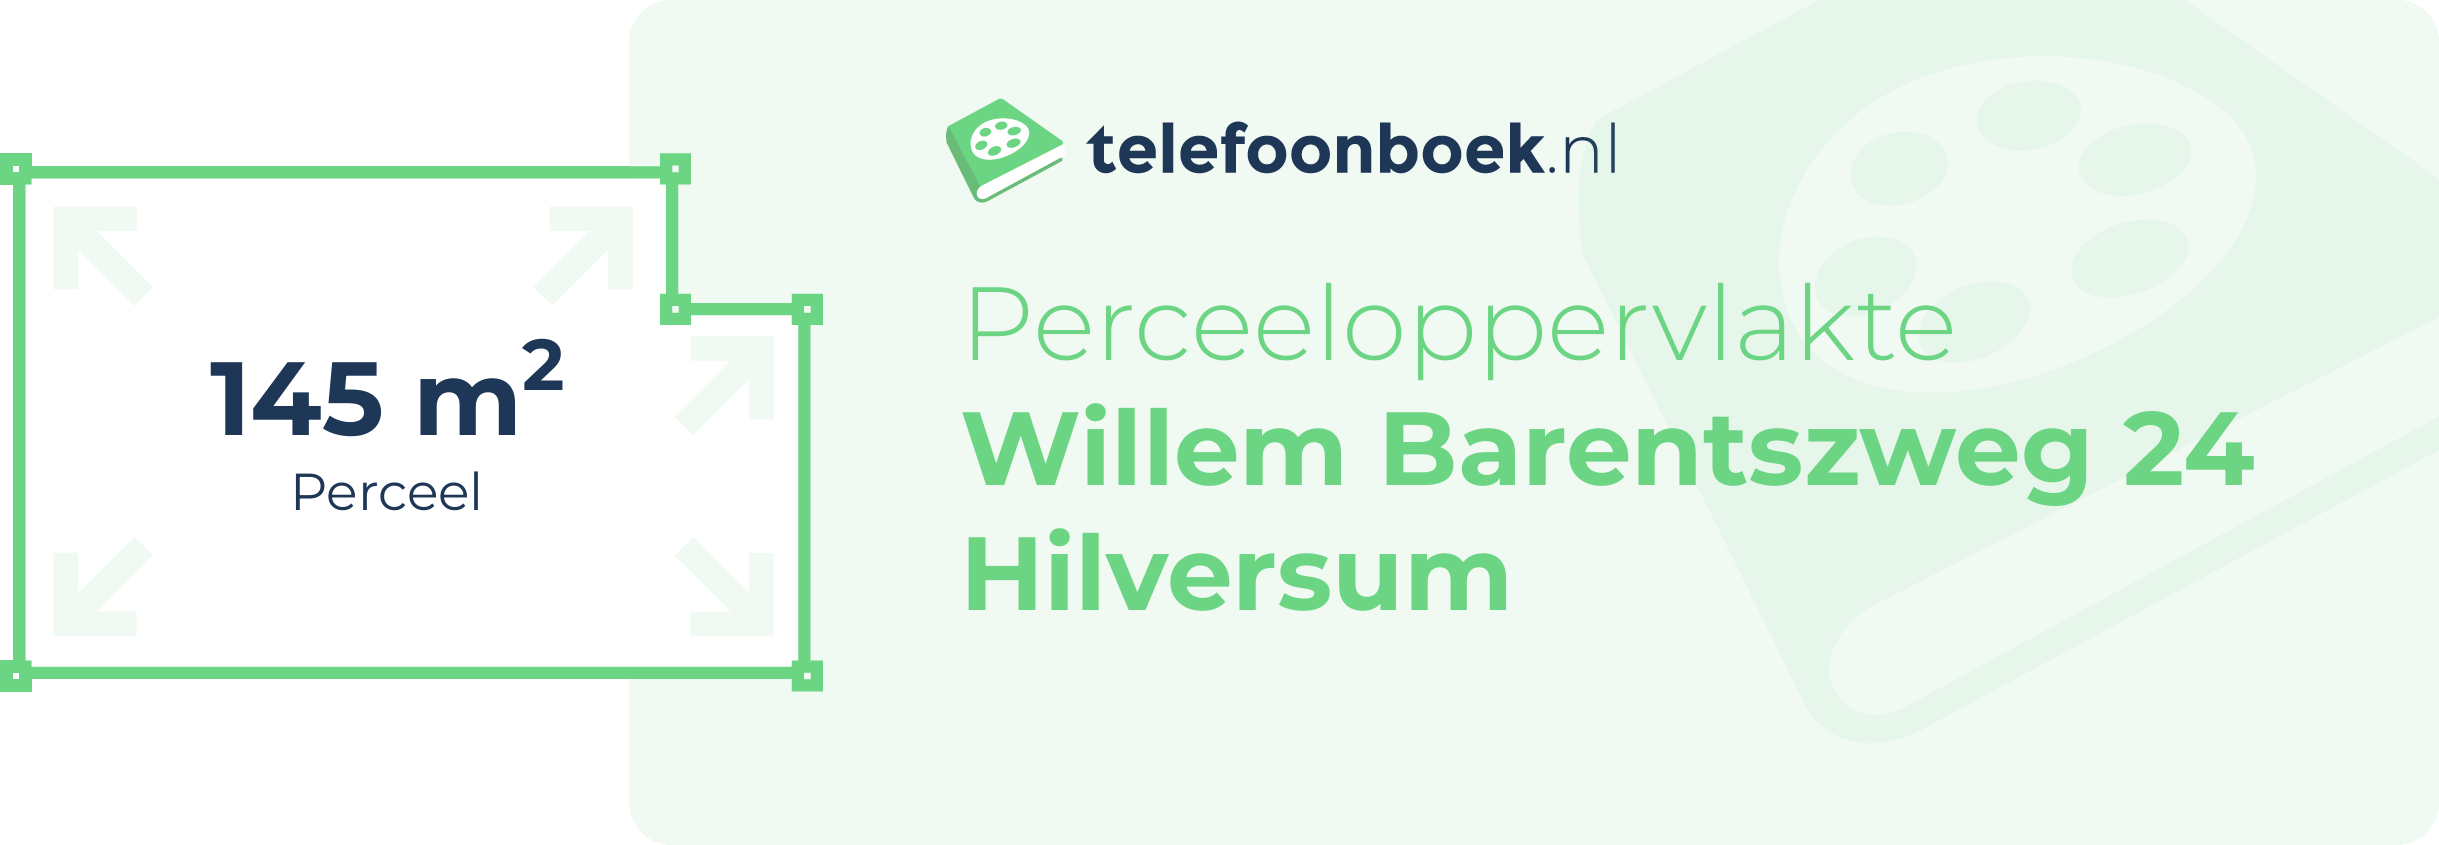 Perceeloppervlakte Willem Barentszweg 24 Hilversum